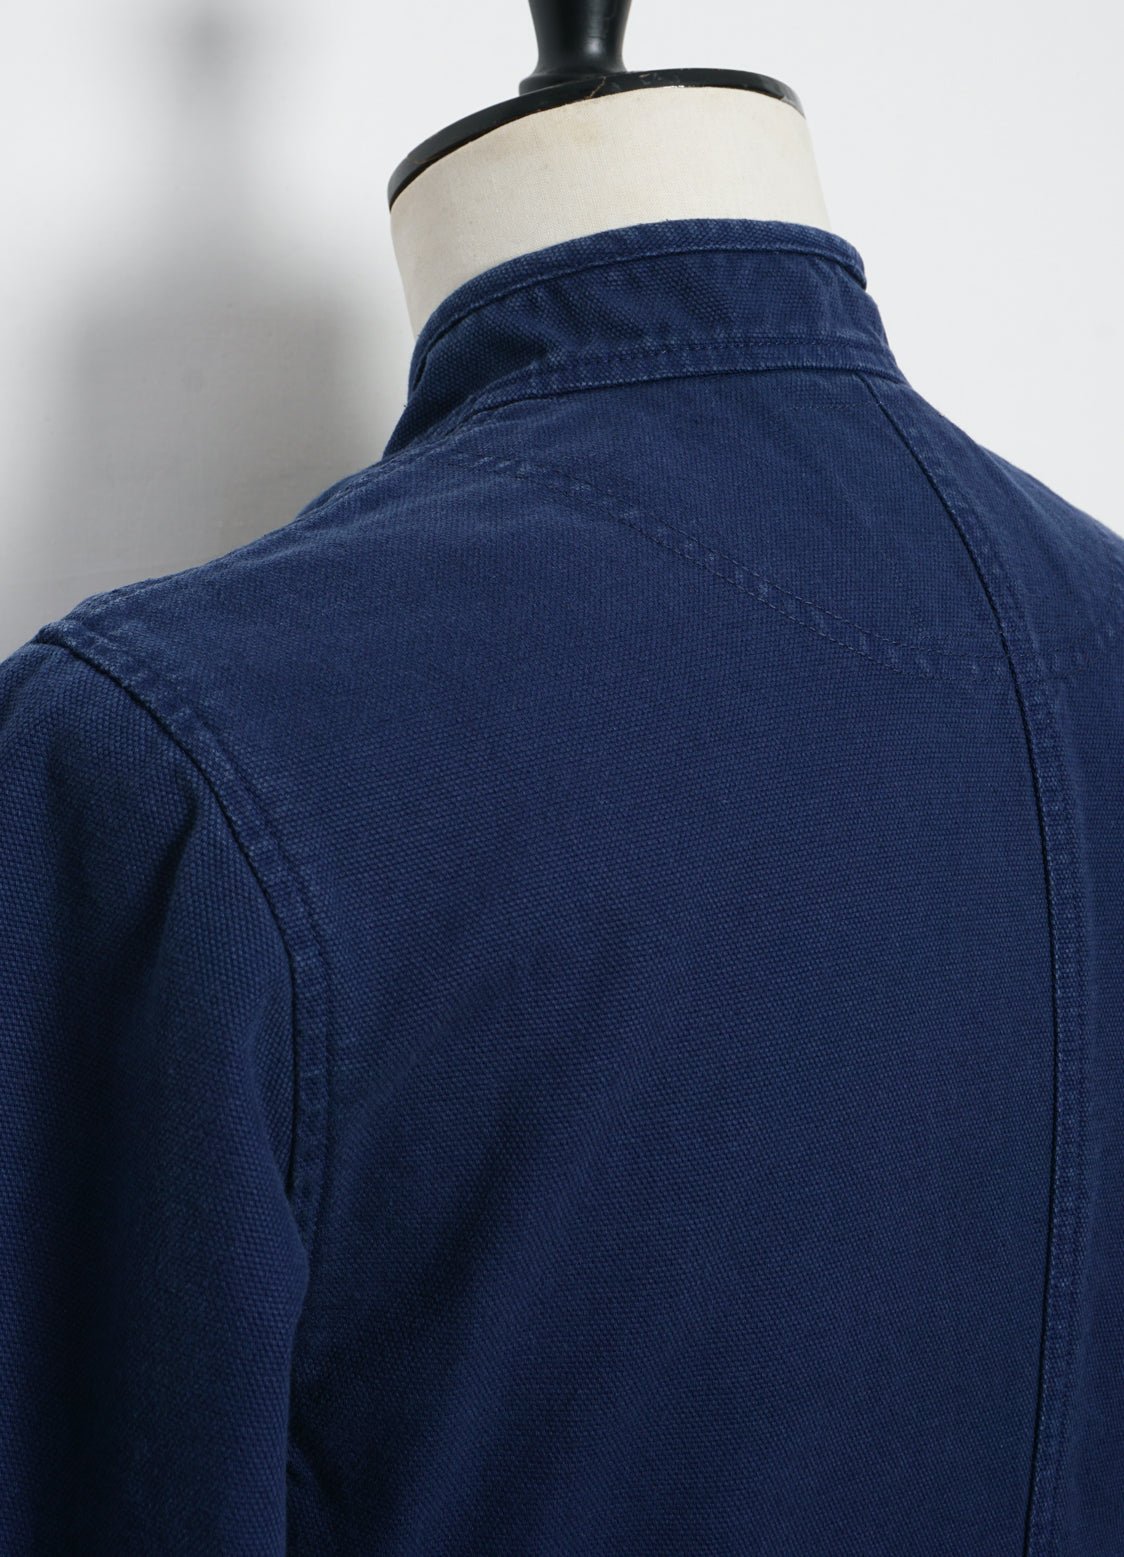 HANSEN GARMENTS - ERLING | Refined Work Jacket | Work Blue - HANSEN Garments